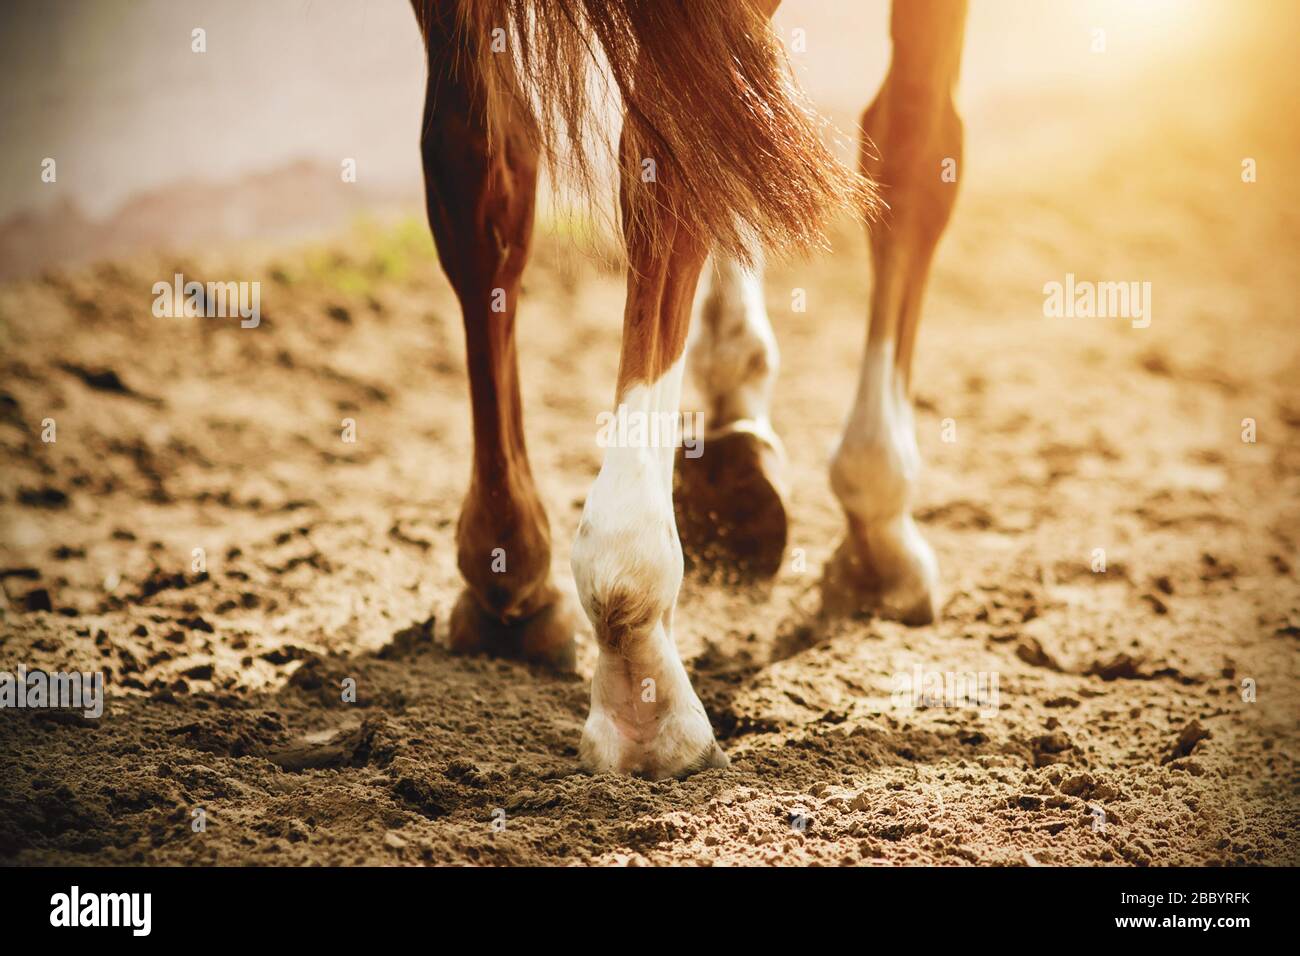 Ein Pferd mit dünnen, eleganten Beinen und Unbeschauern läuft langsam auf den Sand, der von hellem, warmem Sonnenlicht beleuchtet wird. Stockfoto